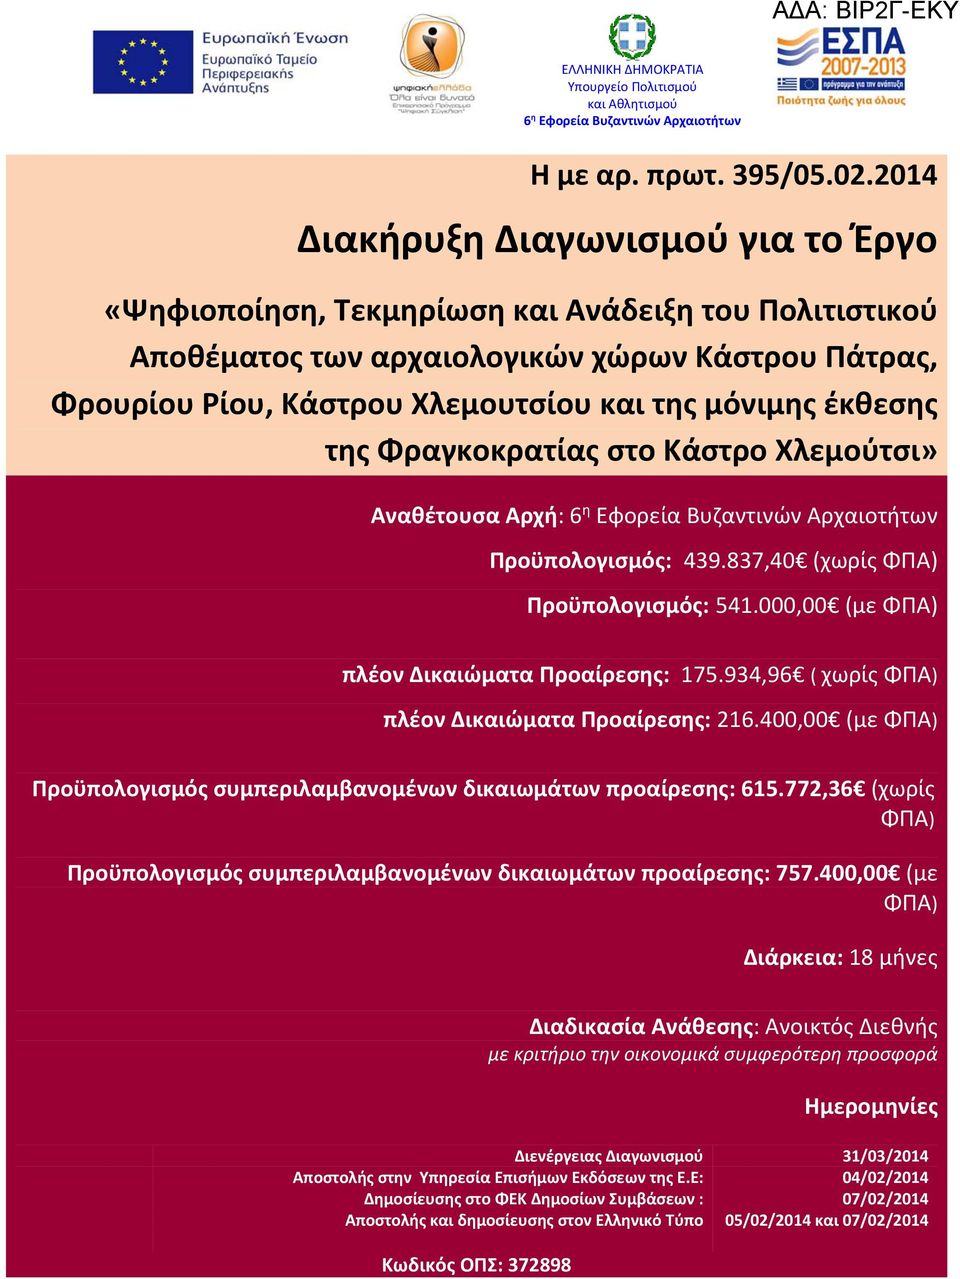 έκθεσης της Φραγκοκρατίας στο Κάστρο Χλεμούτσι» Αναθέτουσα Αρχή: 6 η Εφορεία Βυζαντινών Αρχαιοτήτων Προϋπολογισμός: 439.837,40 (χωρίς ΦΠΑ) Προϋπολογισμός: 541.